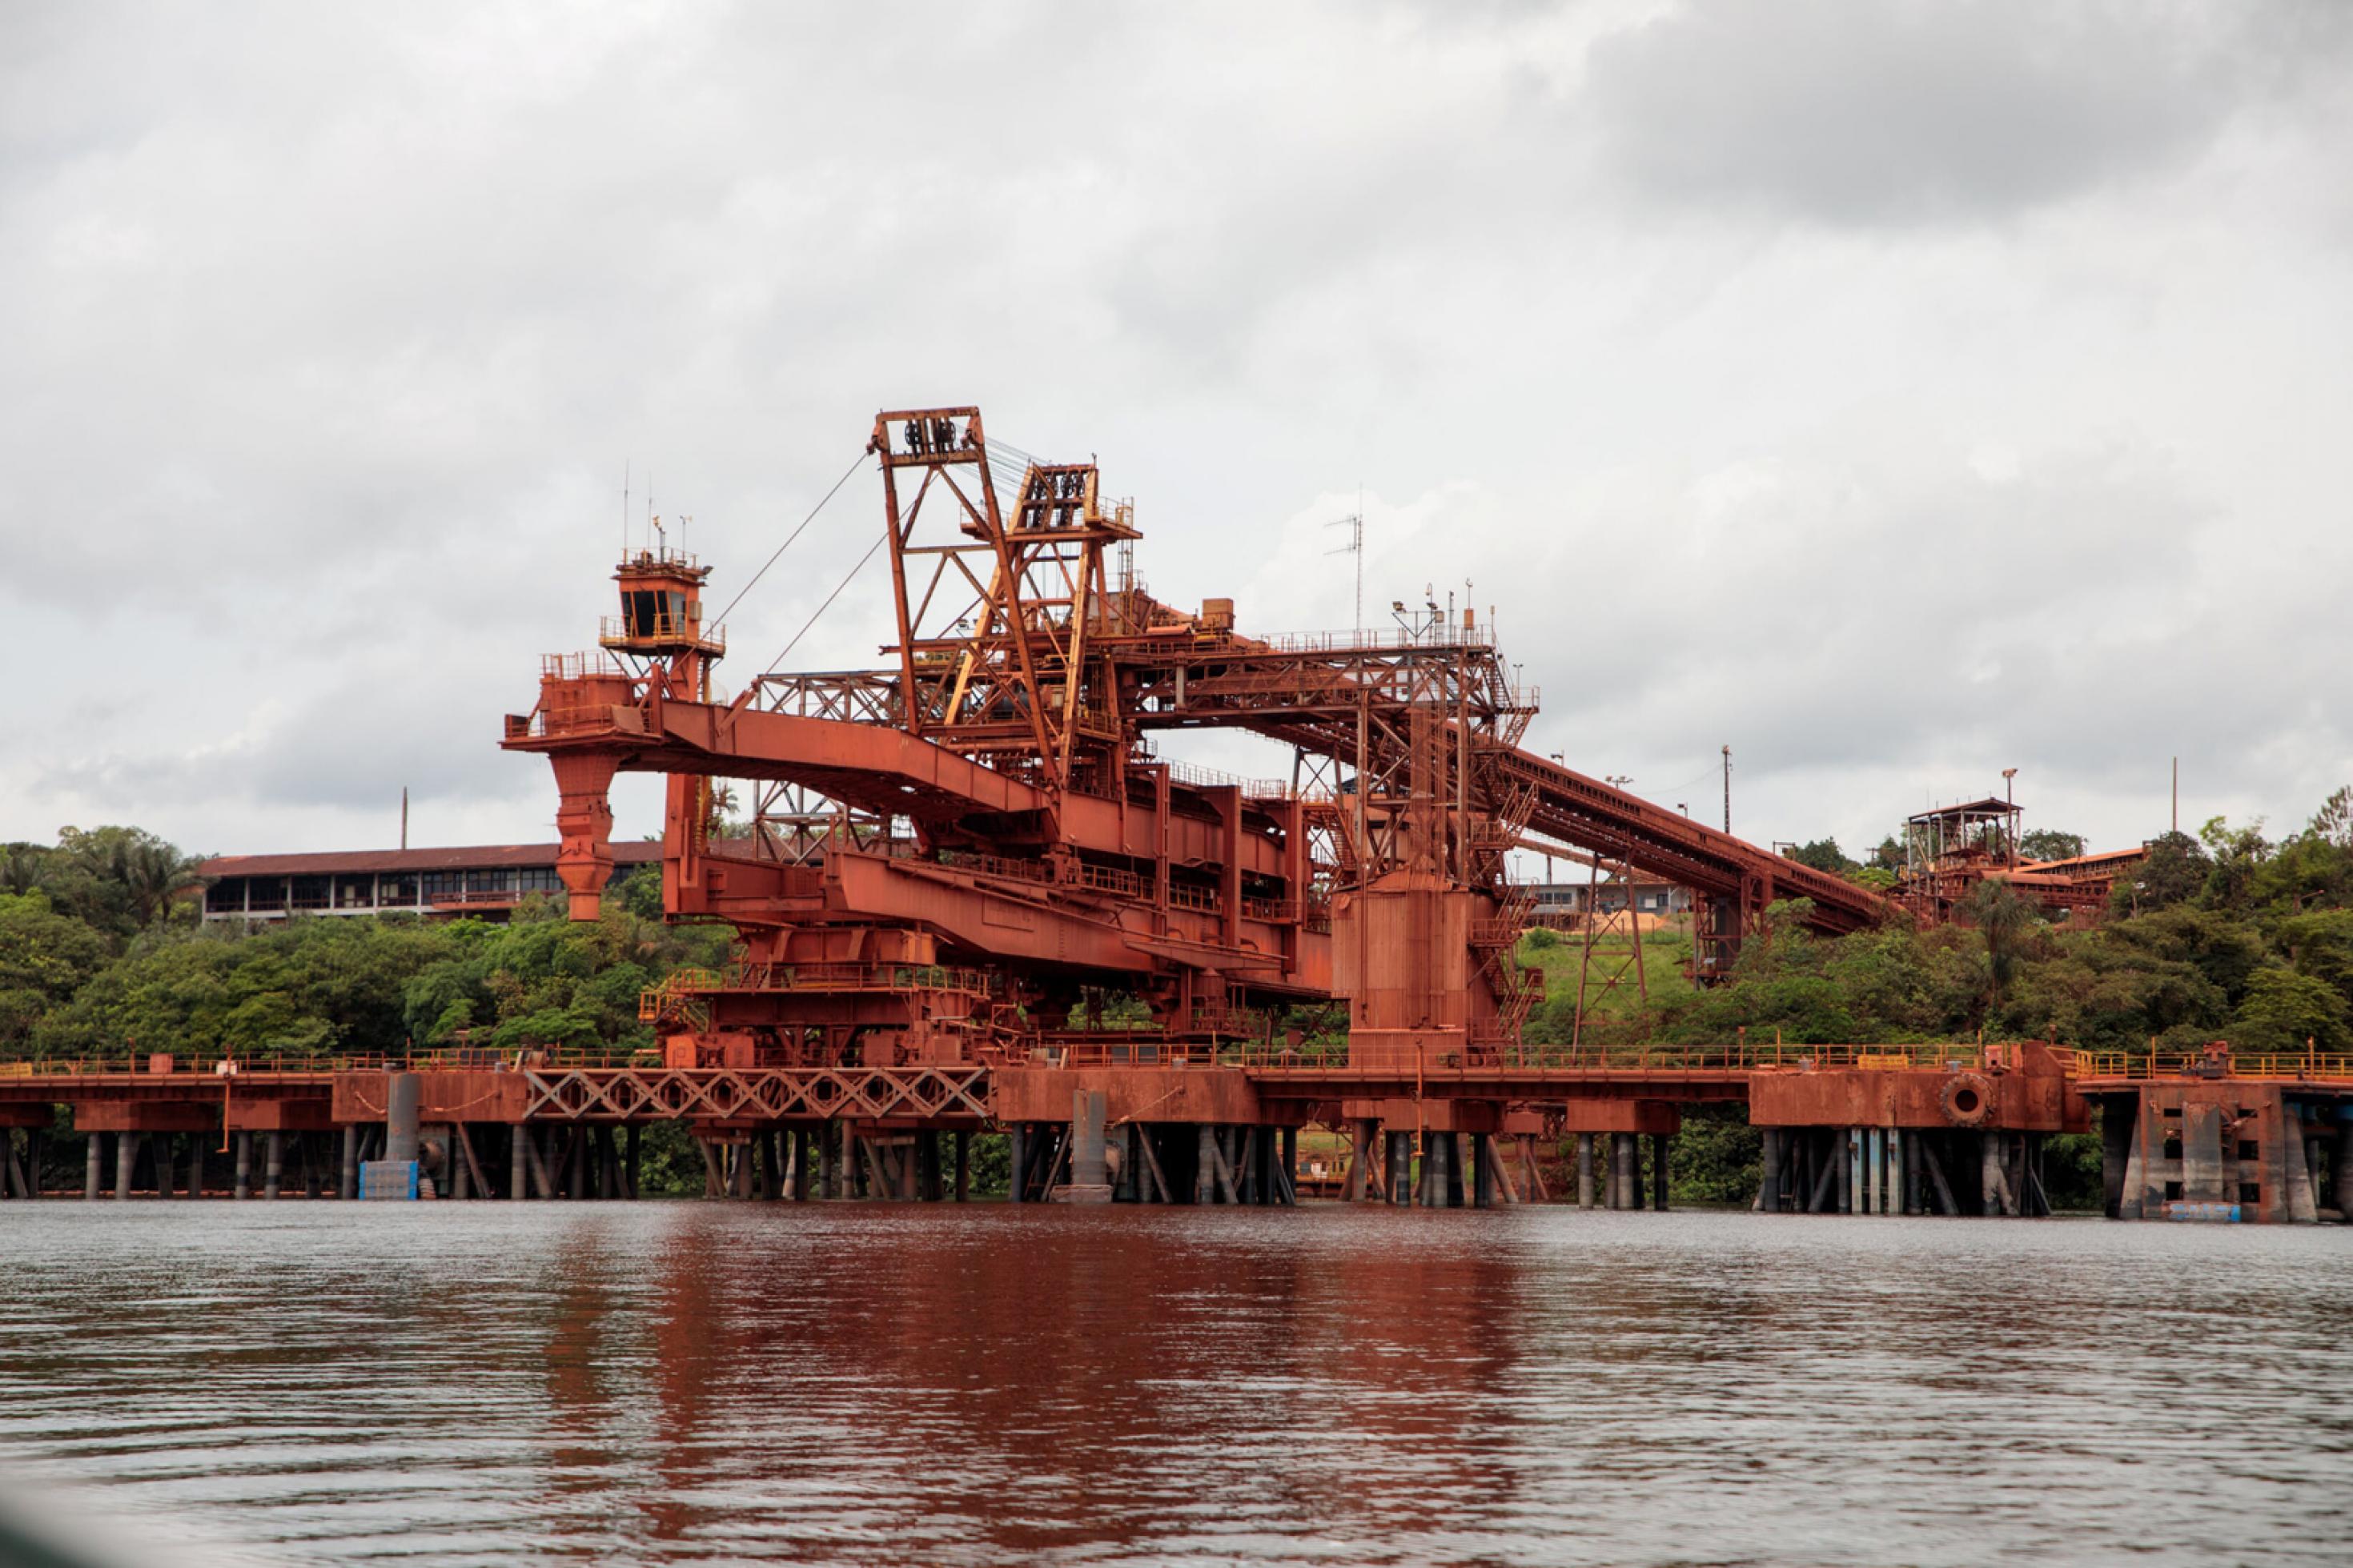 Schiffsverladeanlage von Porto Trompetas in einer Totalen. Die Bauxitlagerstätten von Porto Trombetas liegen rund 900 km westlich von Belém im Bundesstaat Pará. Für 1 Tonne Primäraluminium müssen 5,2 Tonnen Bauxit abgebaut werden.